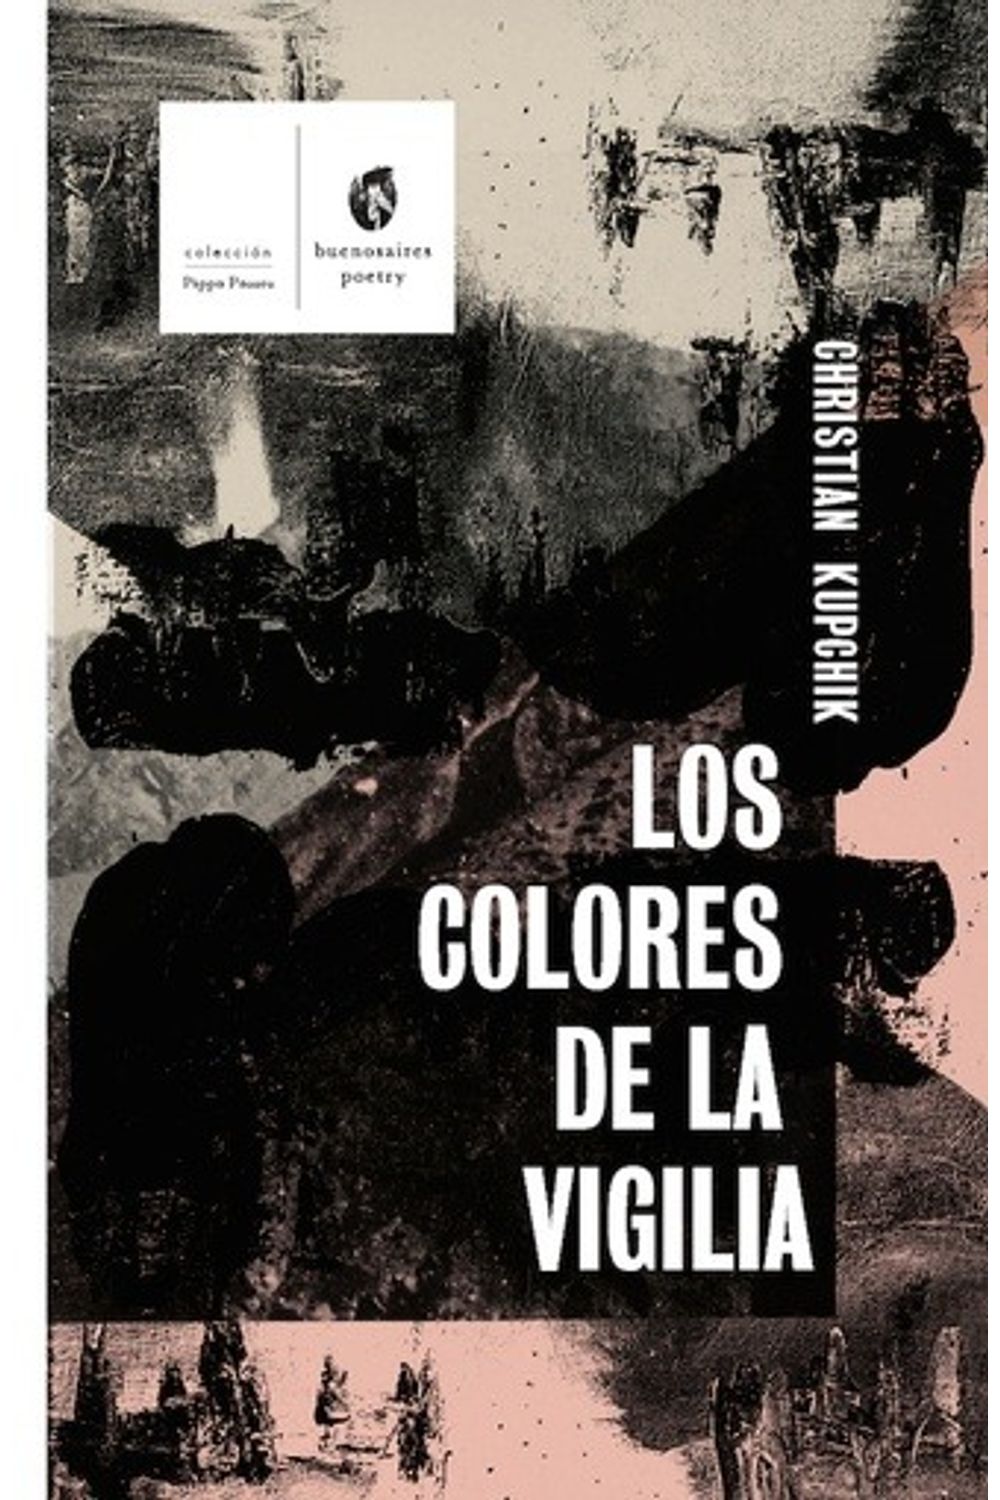 bm-los-colores-de-la-vigilia-buenosaires-poetry-9789874197122